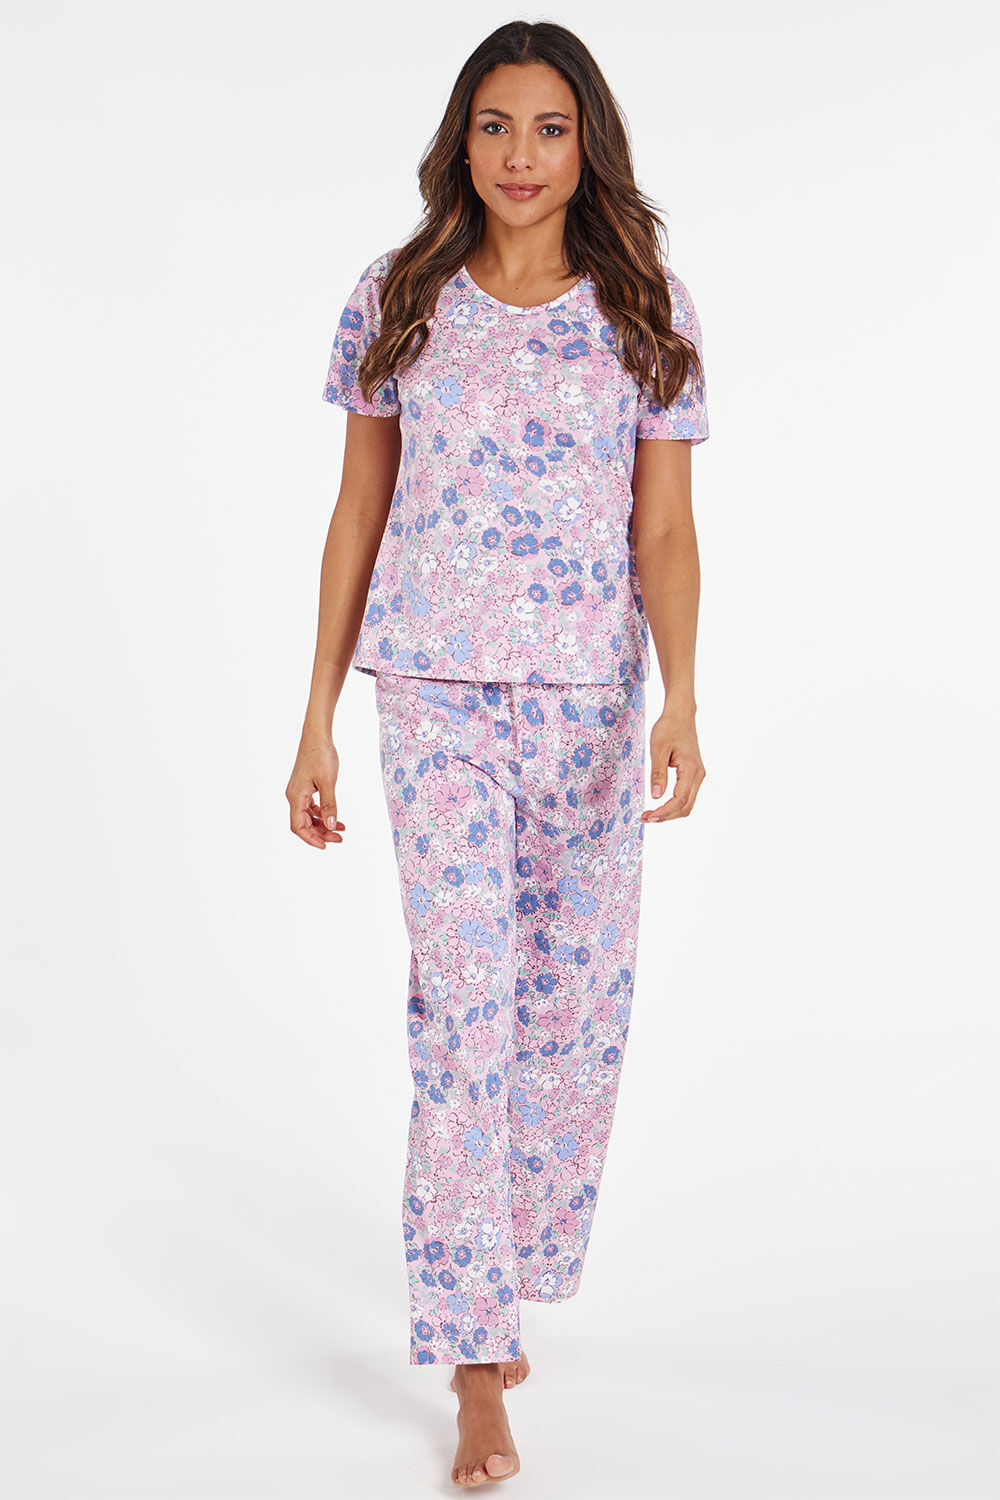 Bonmarche Pink Short Sleeve All Over Floral Print Pyjama Set, Size: 20-22